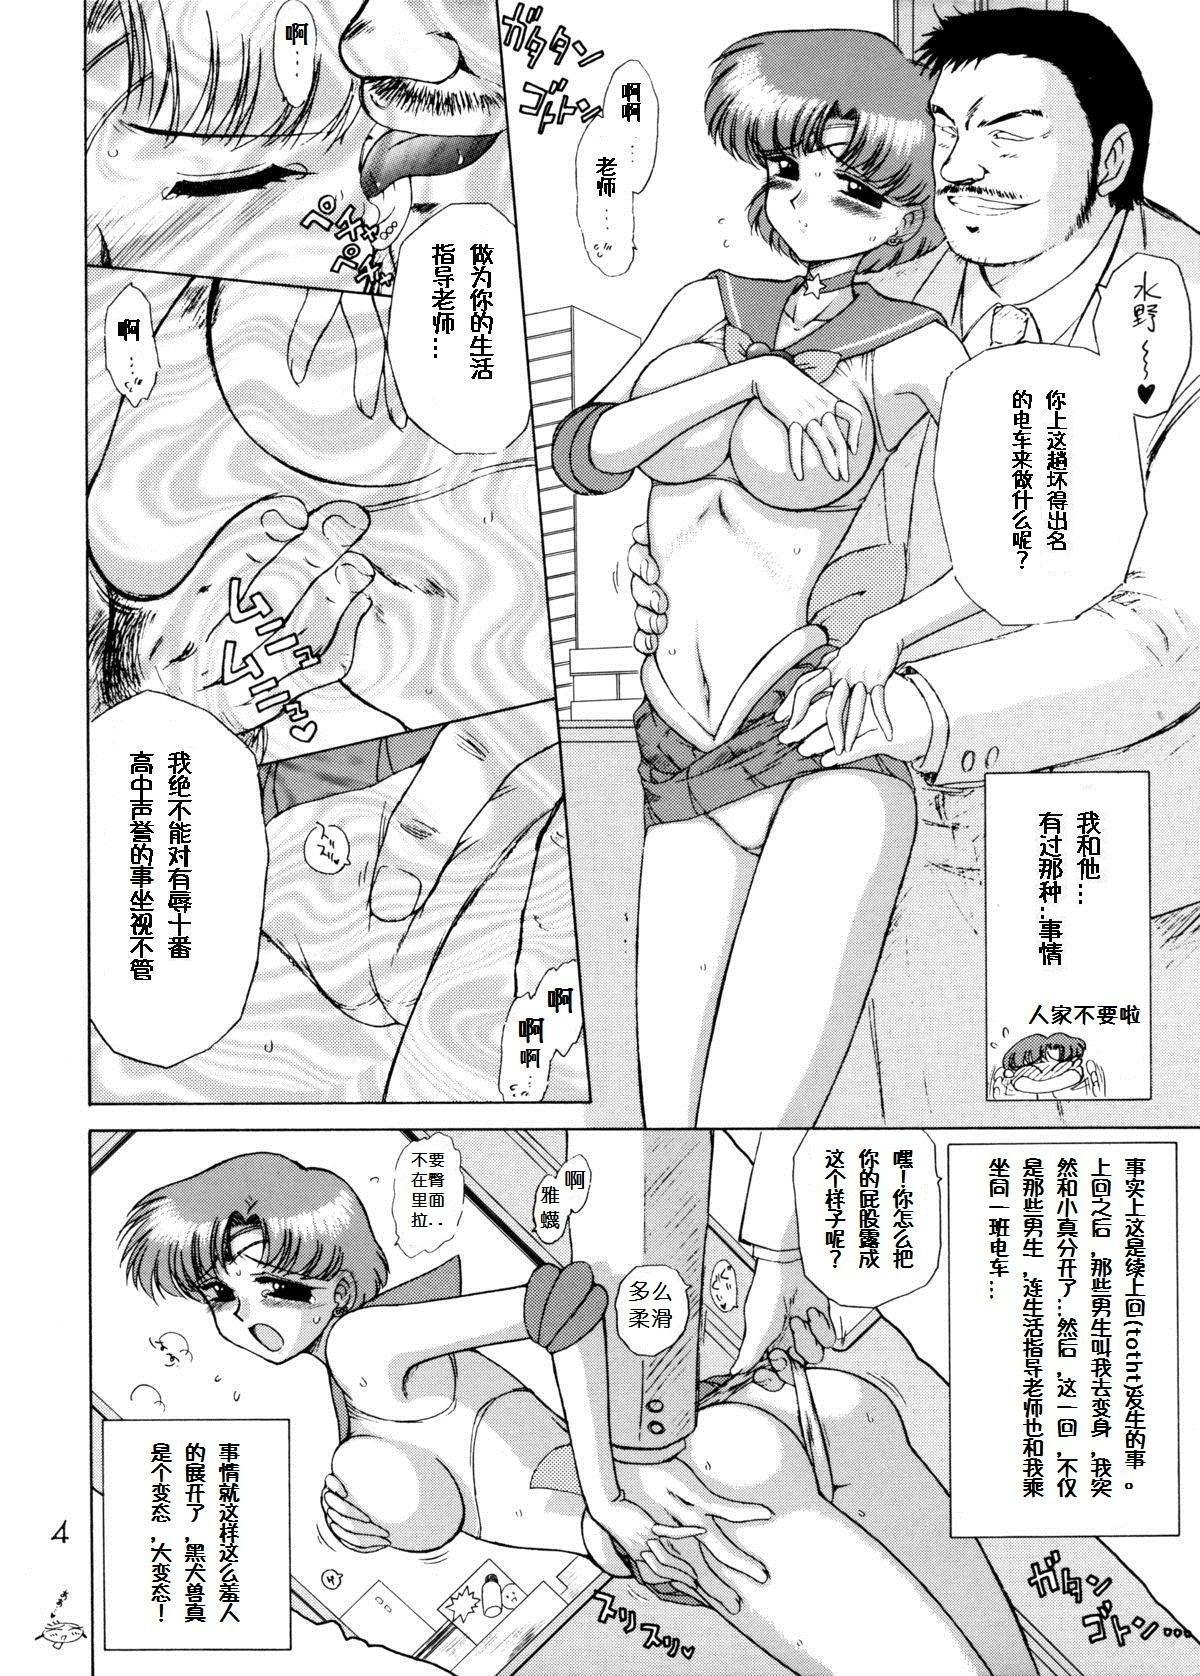 Follando Anubis - Sailor moon Thief - Page 4